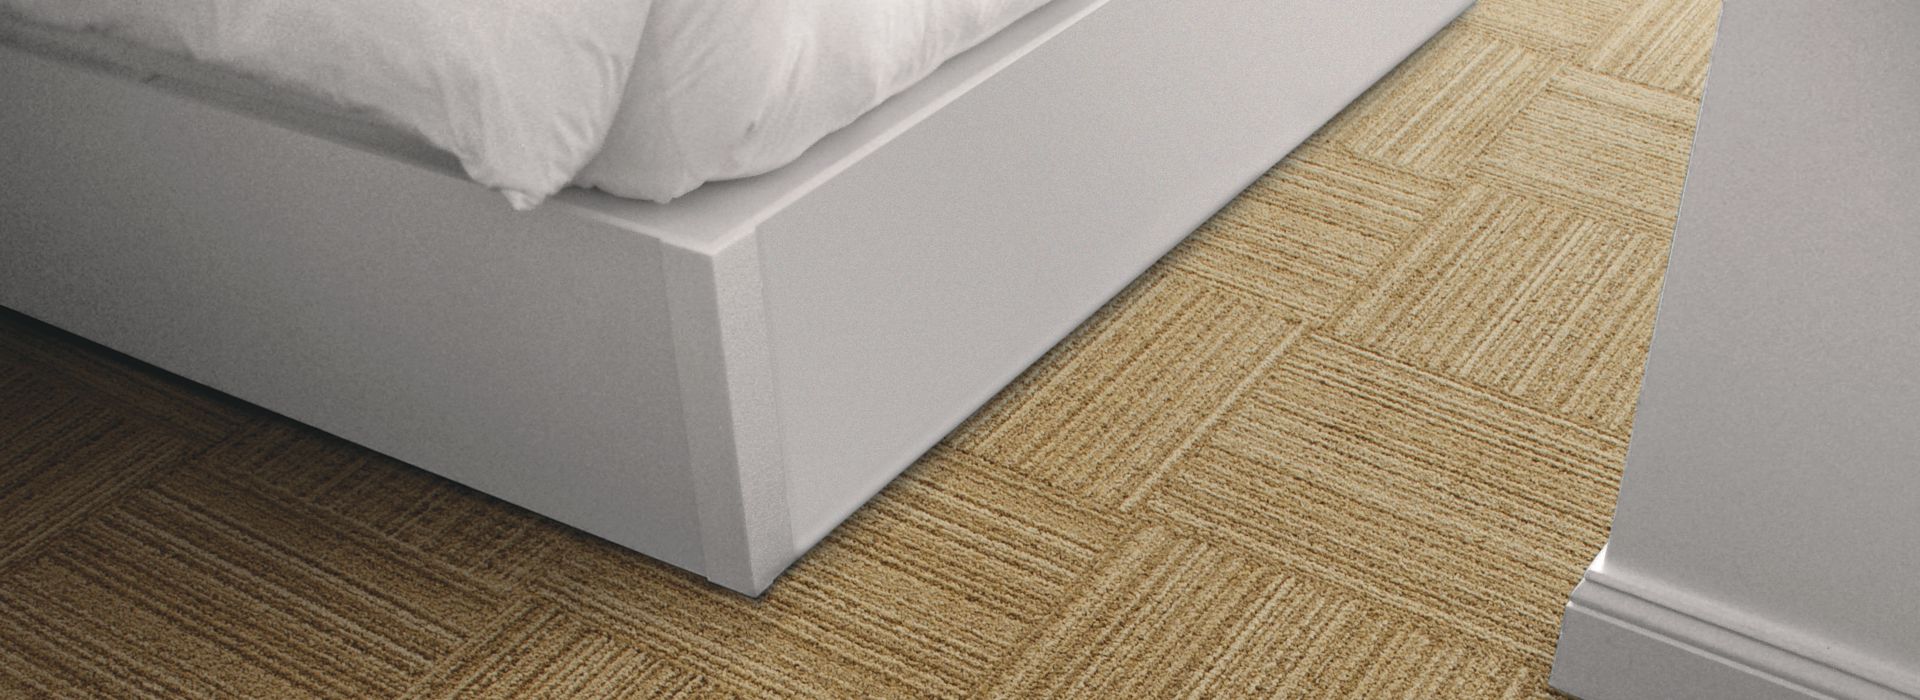 Detail of Interface RMS 103 carpet tile imagen número 1